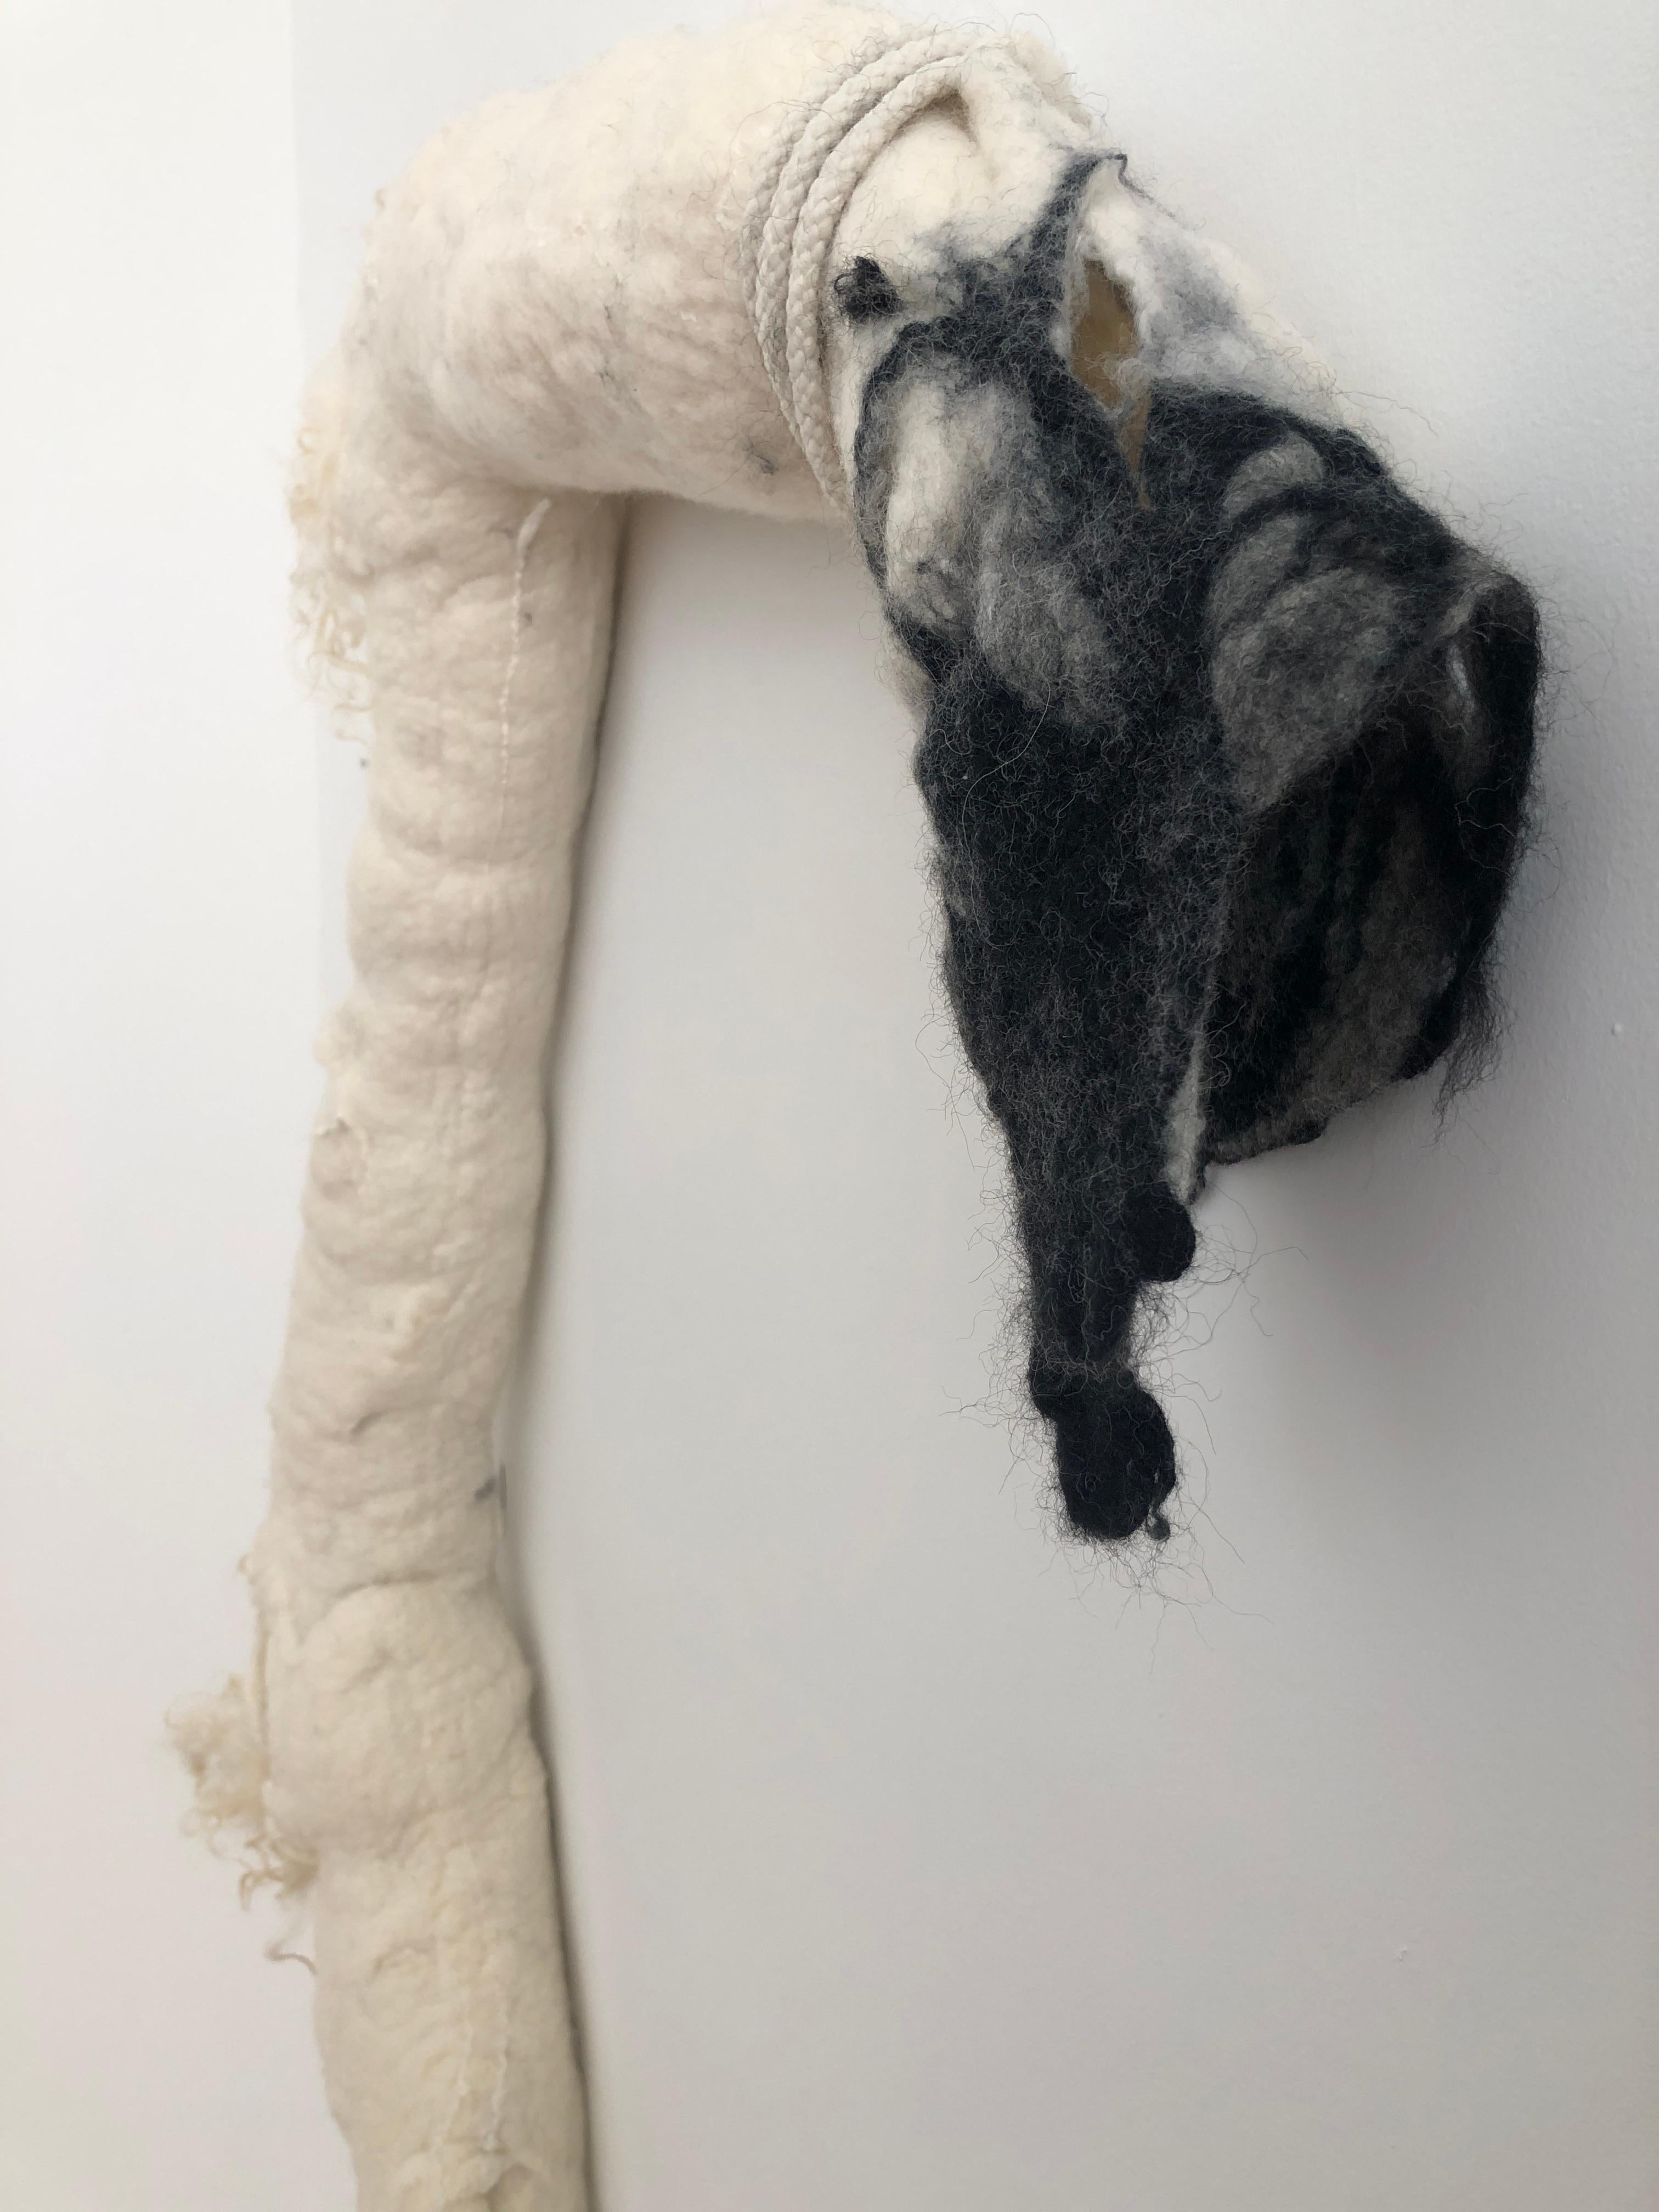 Fiber Art - STRANGER II, (wool, silk, cording) - Contemporary Mixed Media Art by Cindy Weil